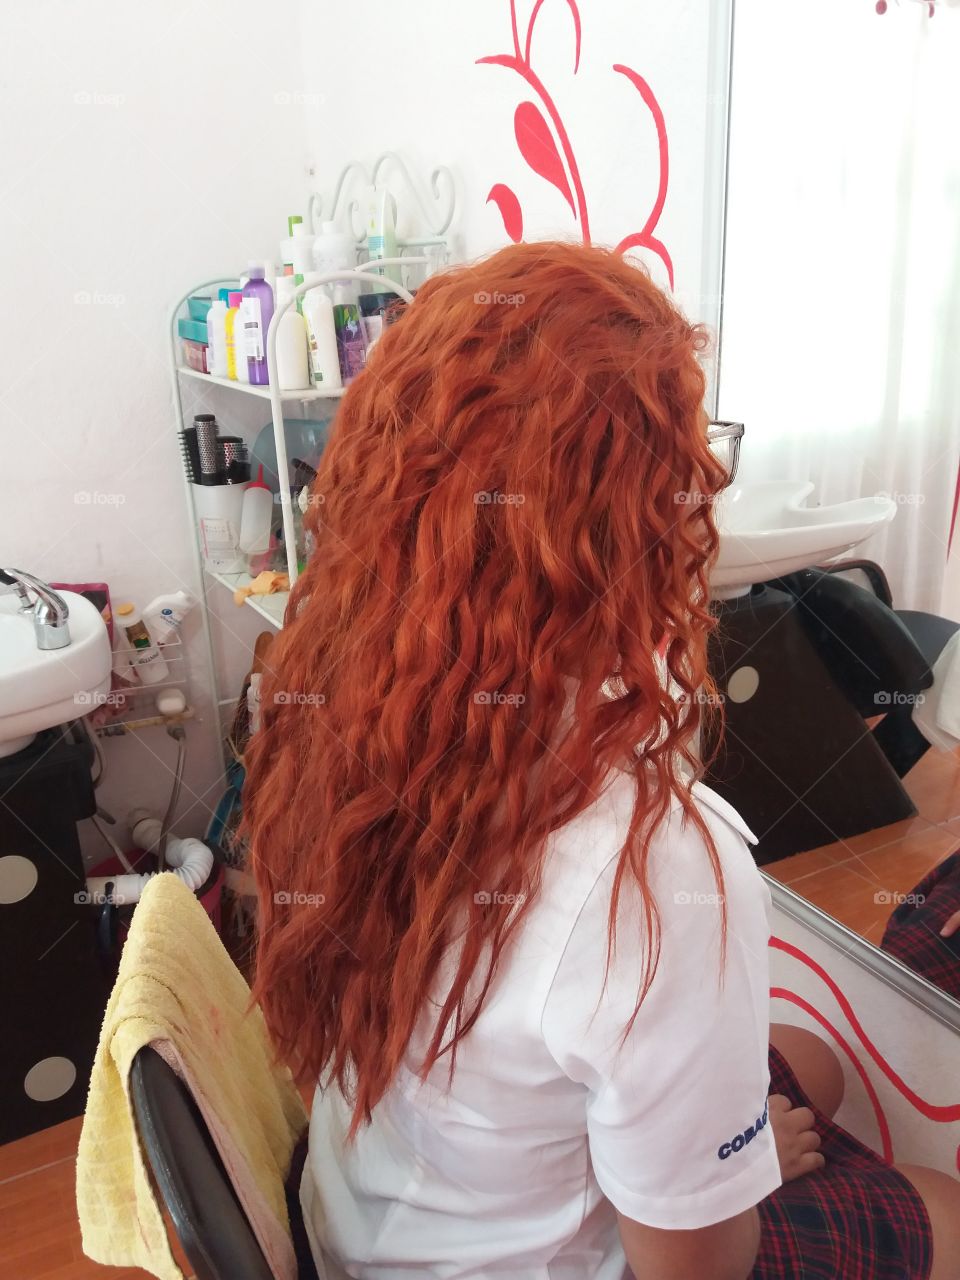 cabello rojo de valiente!😍❤ El color mas hermoso